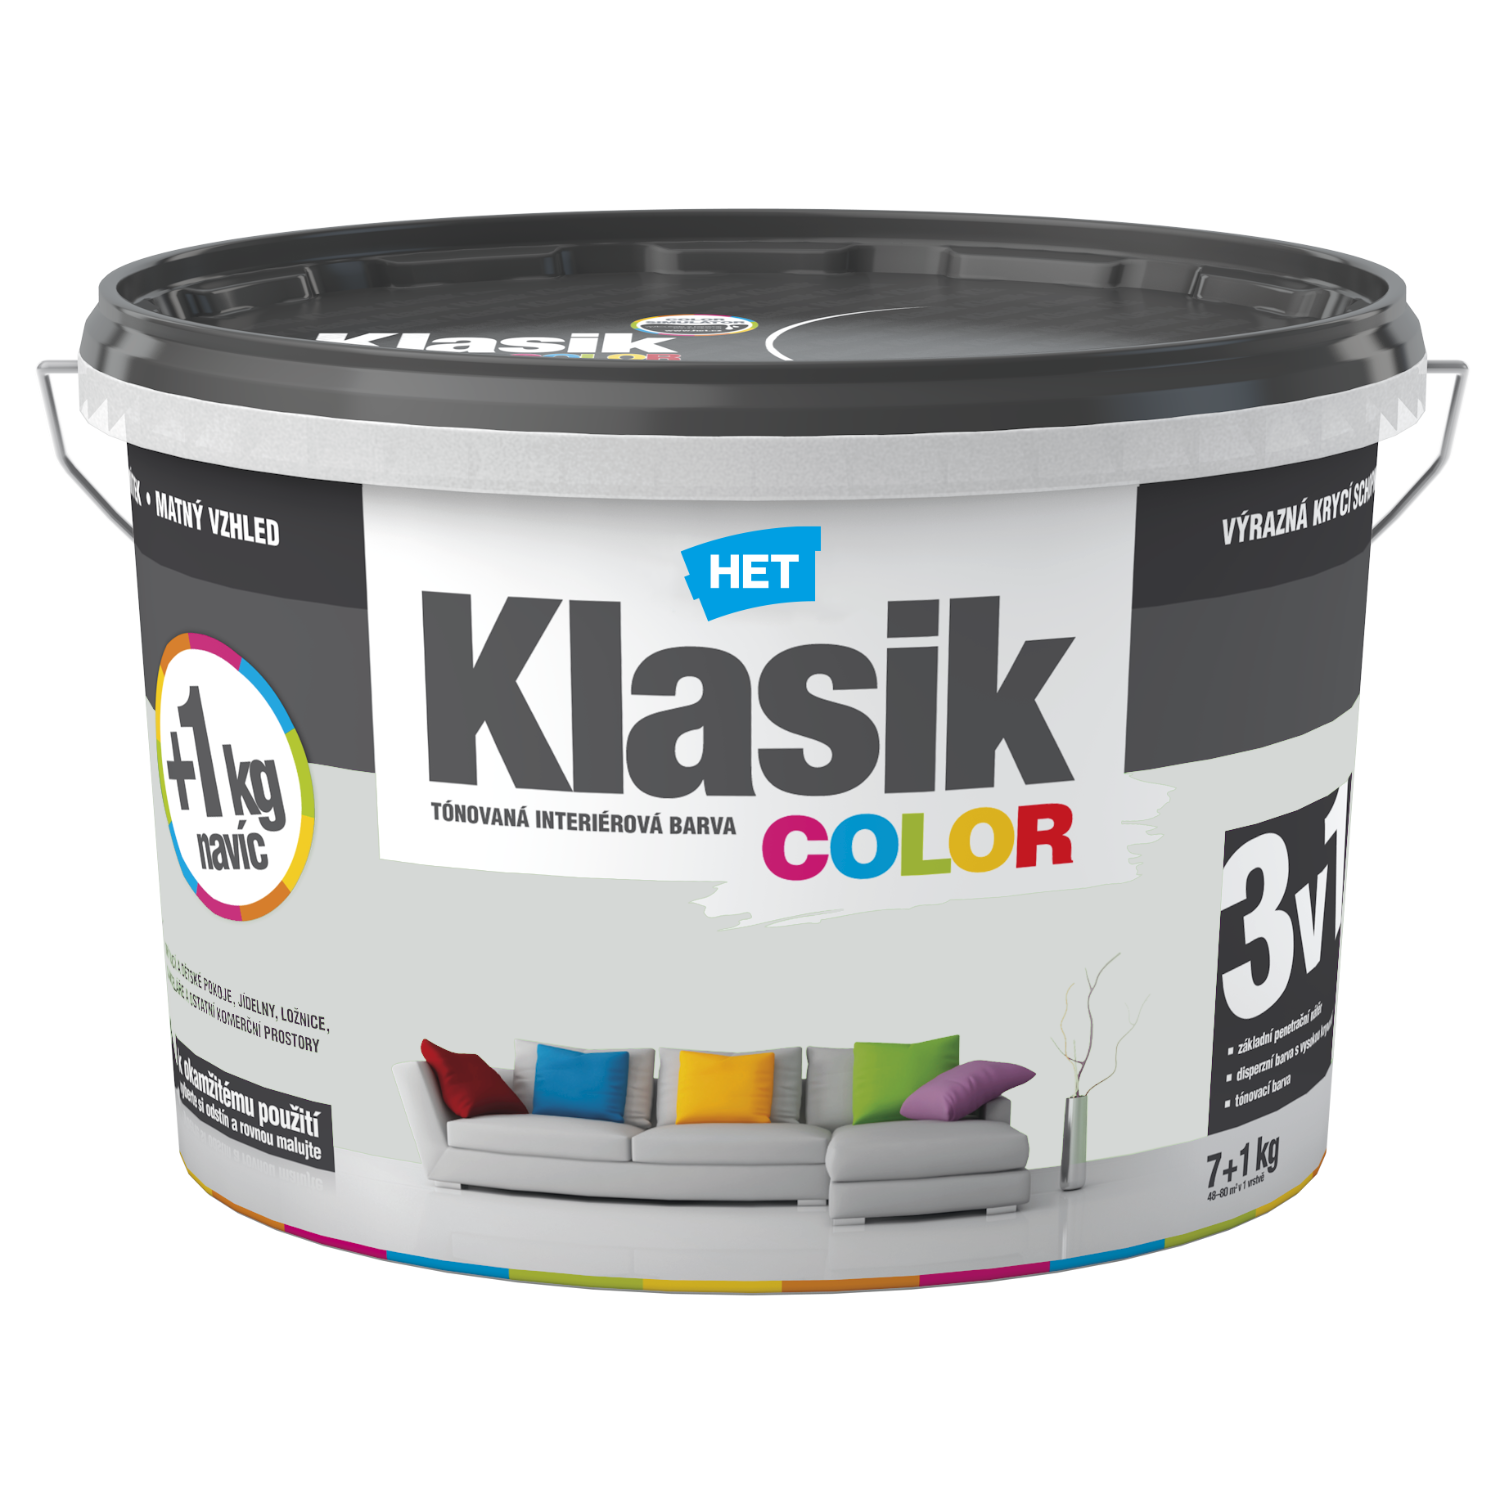 HET Klasik COLOR tónovaná interiérová akrylátová disperzná oteruvzdorná farba 7 kg + 1 kg zdarma, KC0117 -šedý platinový